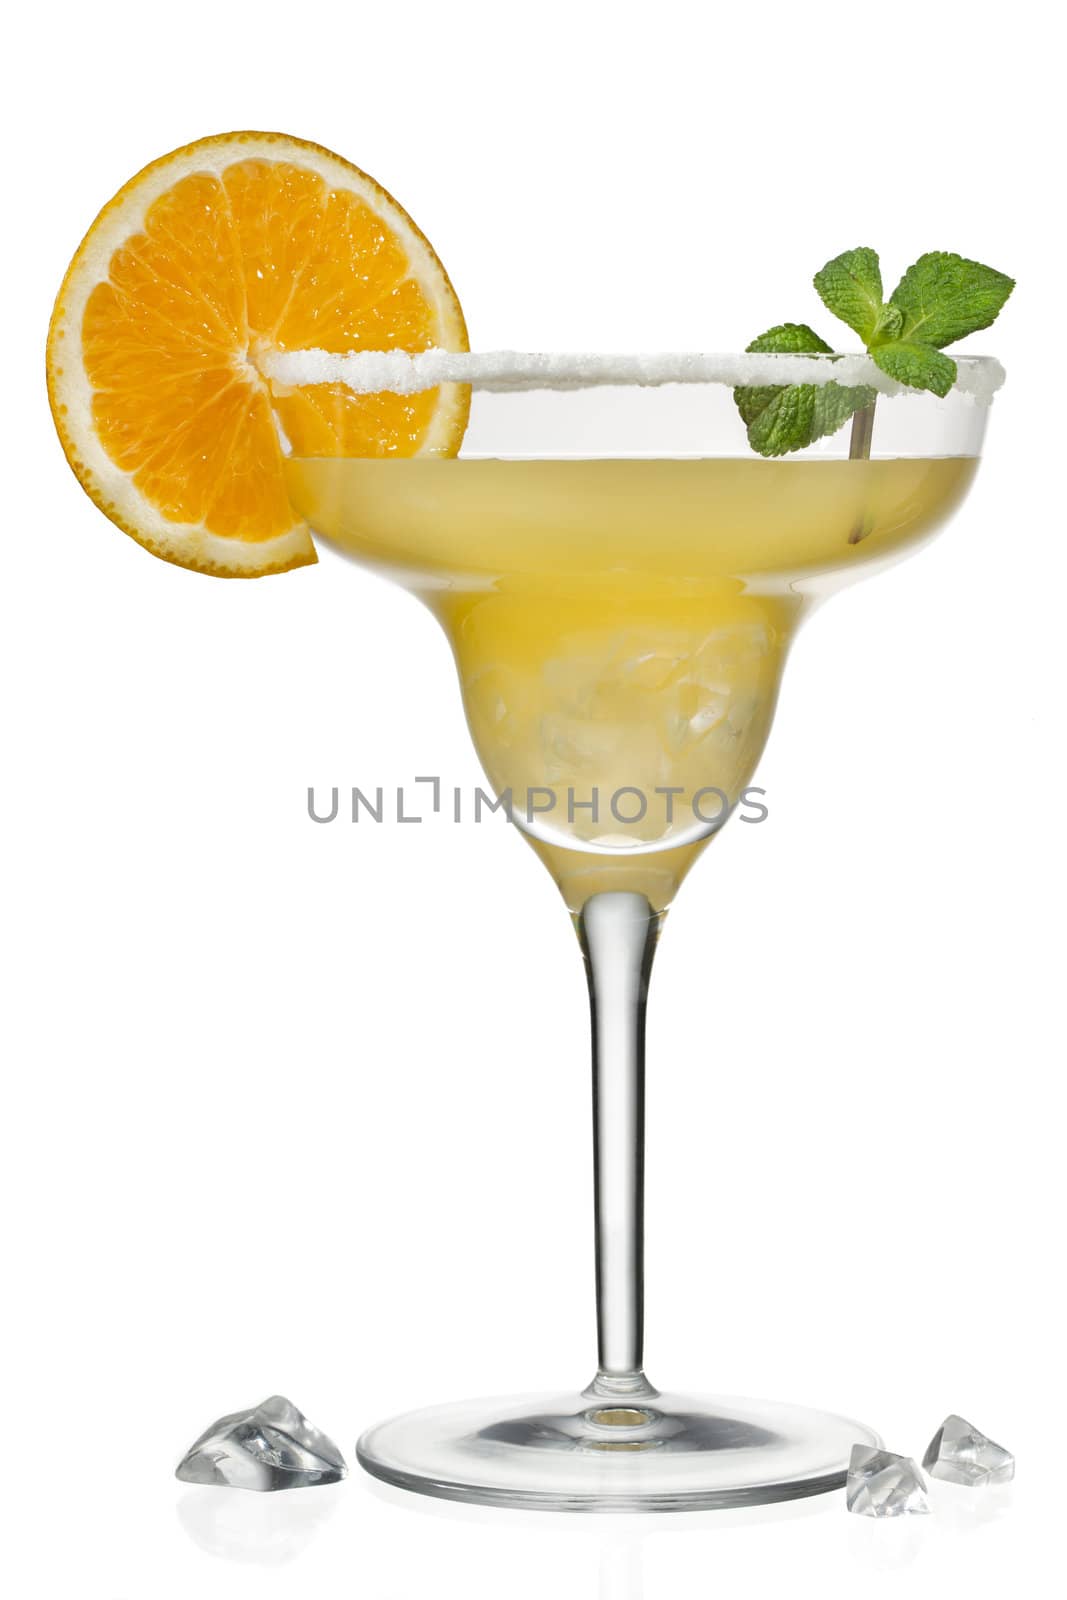 orange juice in martini glass by kozzi